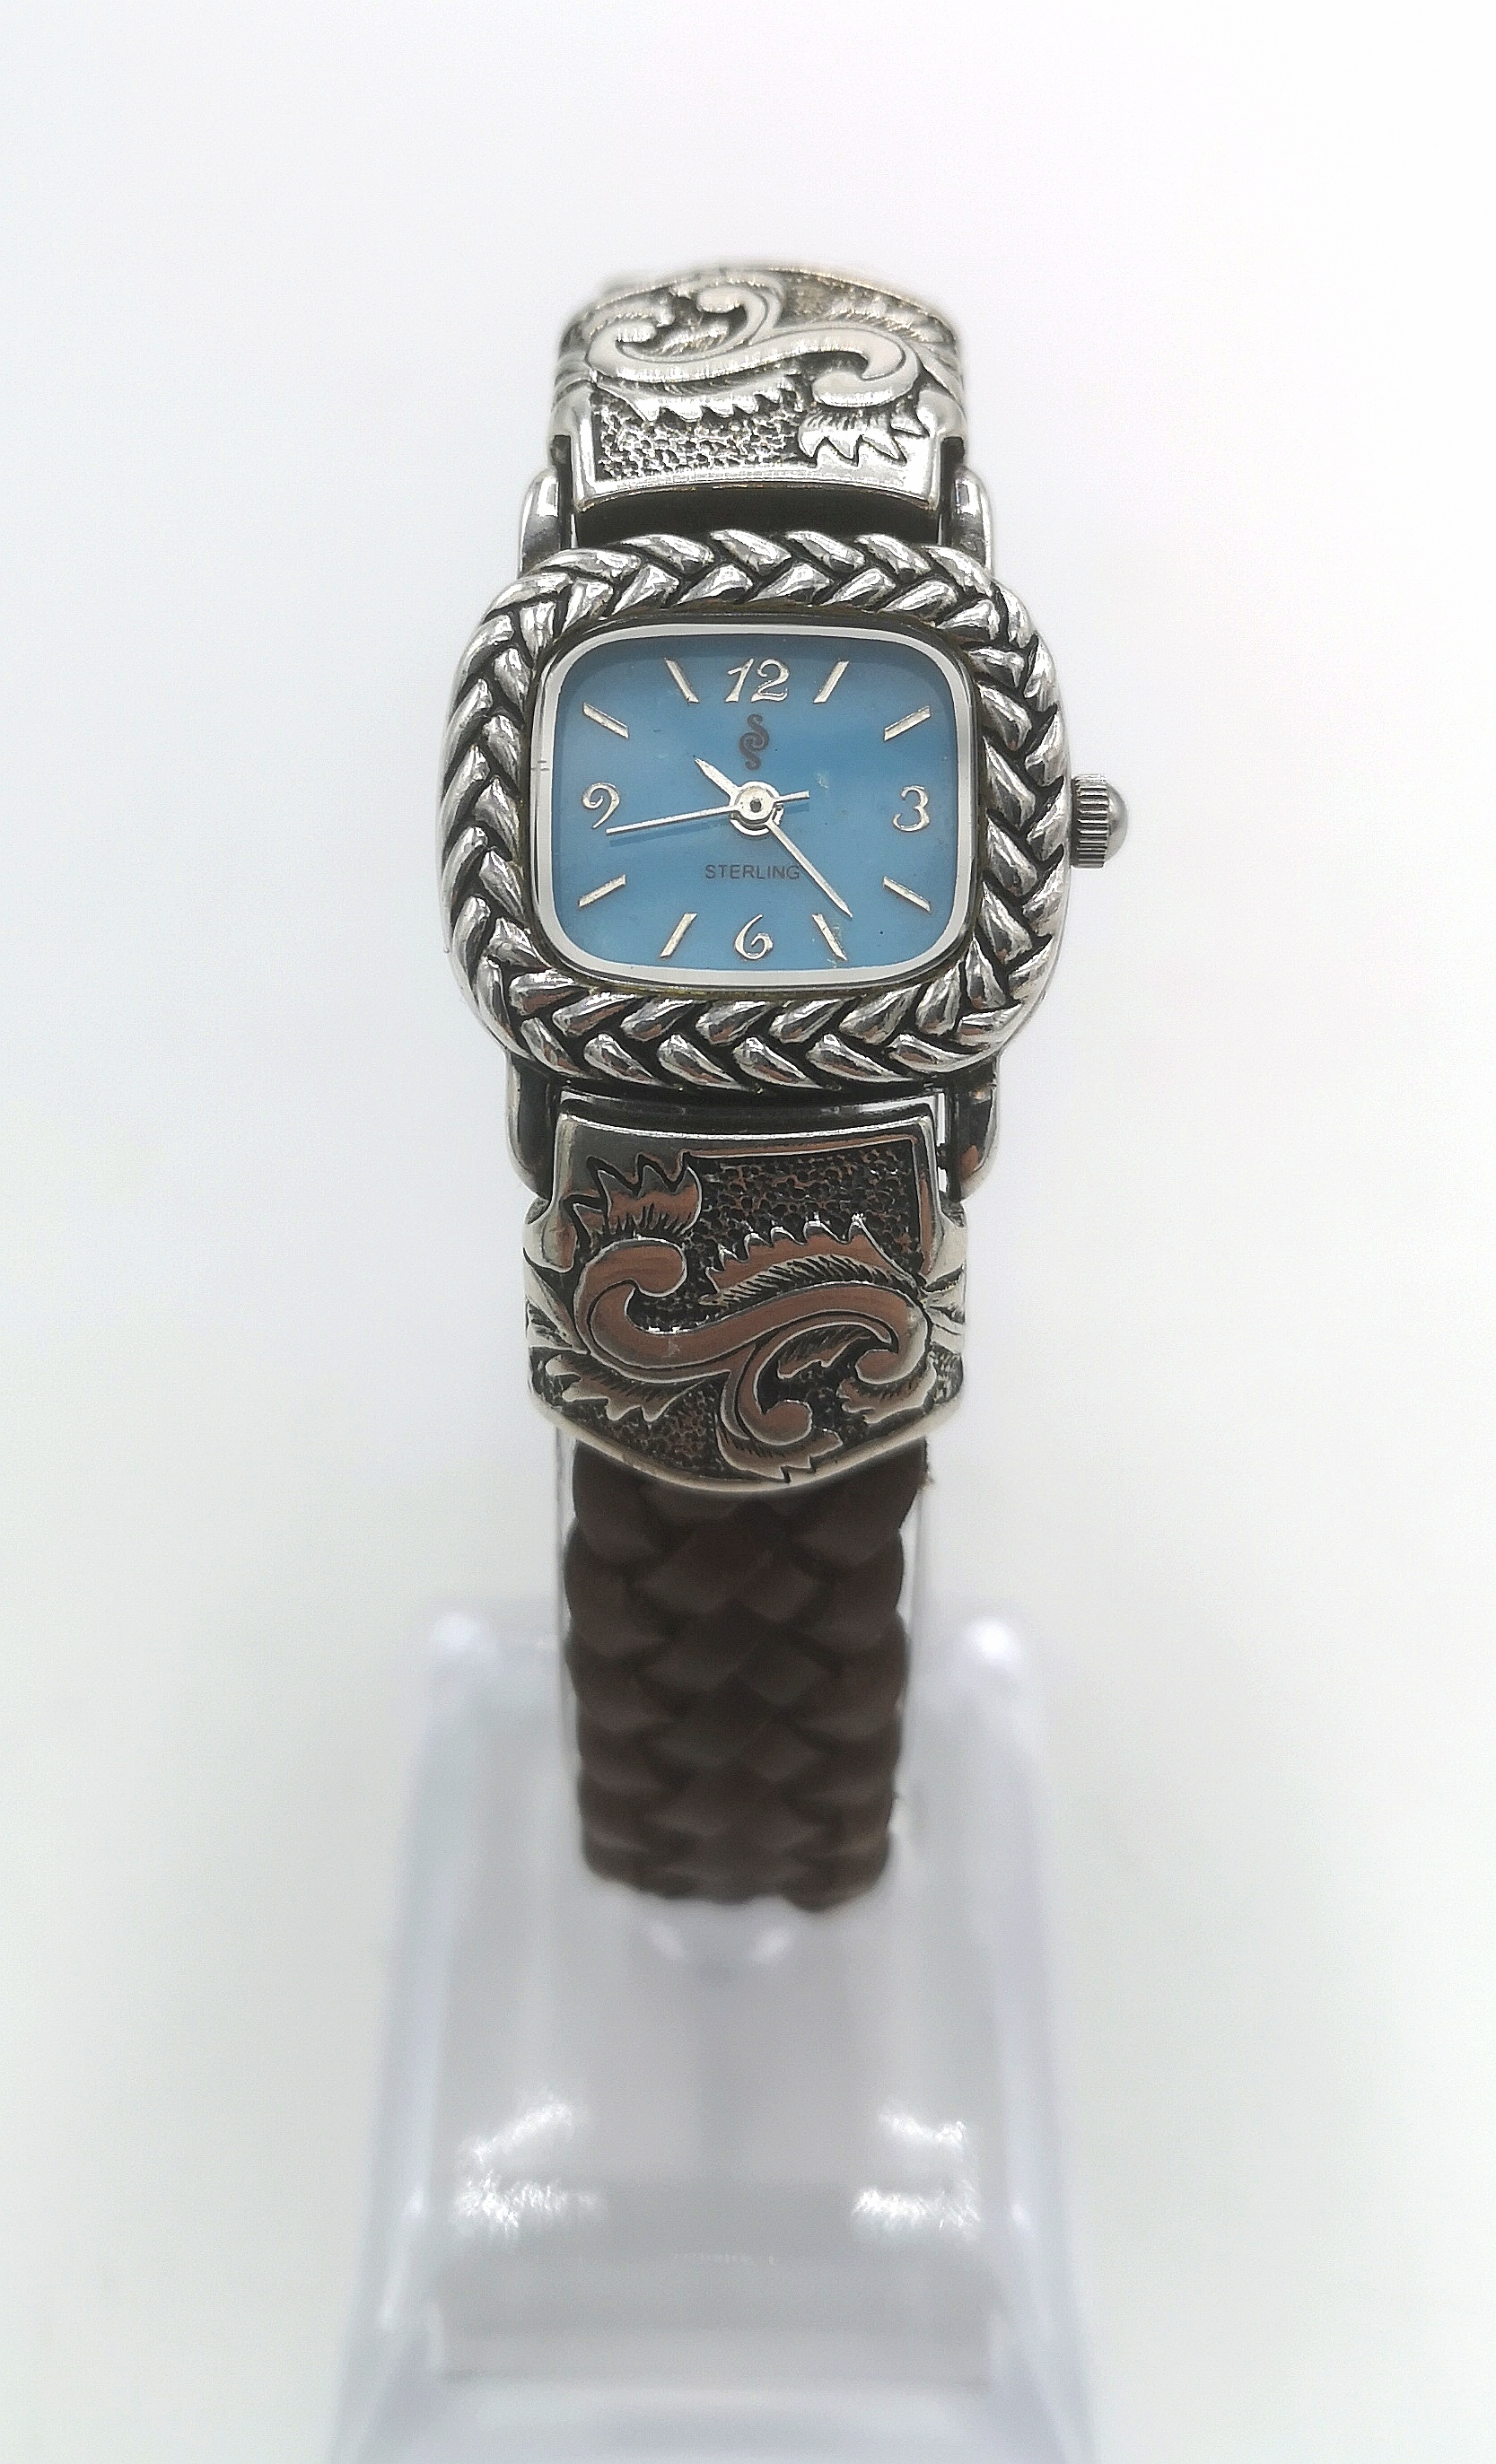 Sterling silver wrist watch